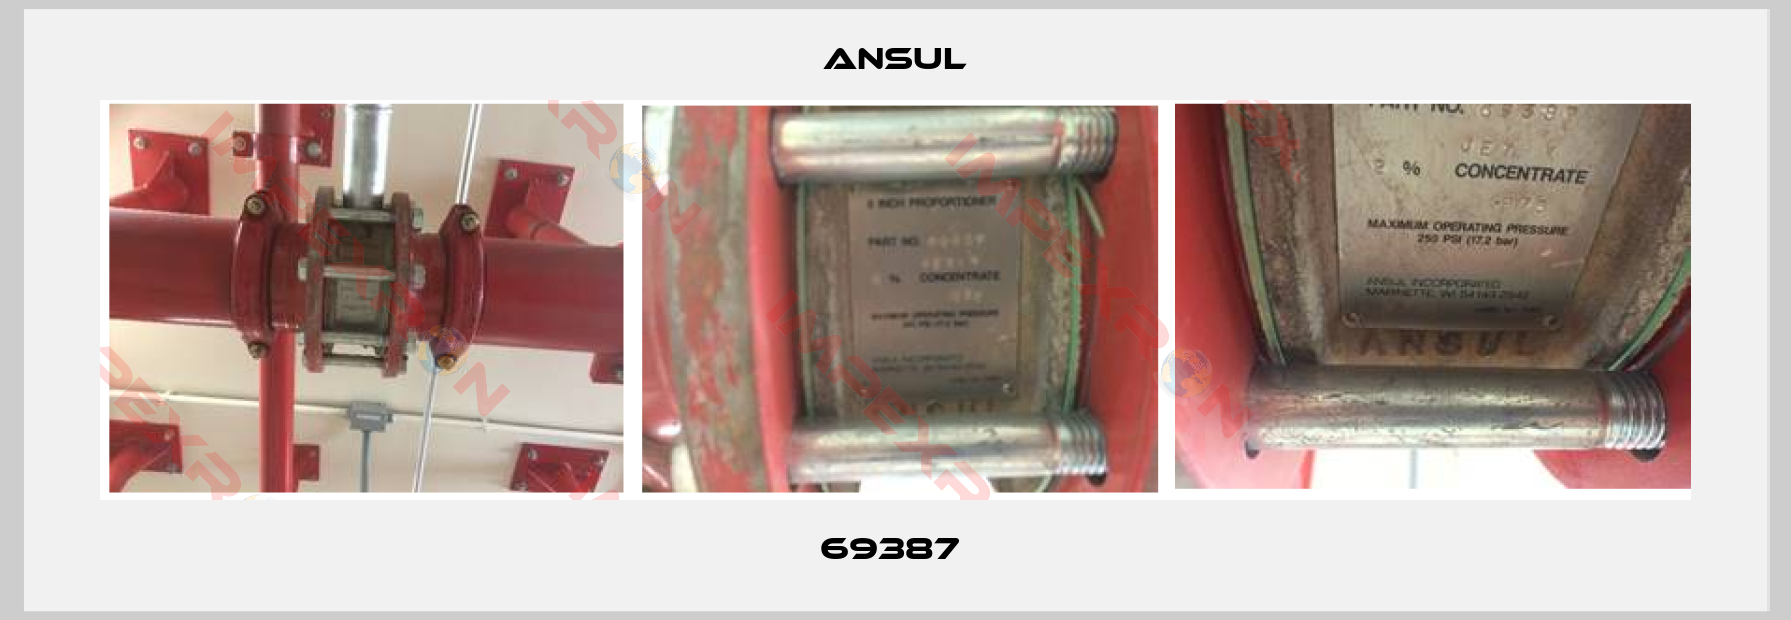 Ansul-69387 